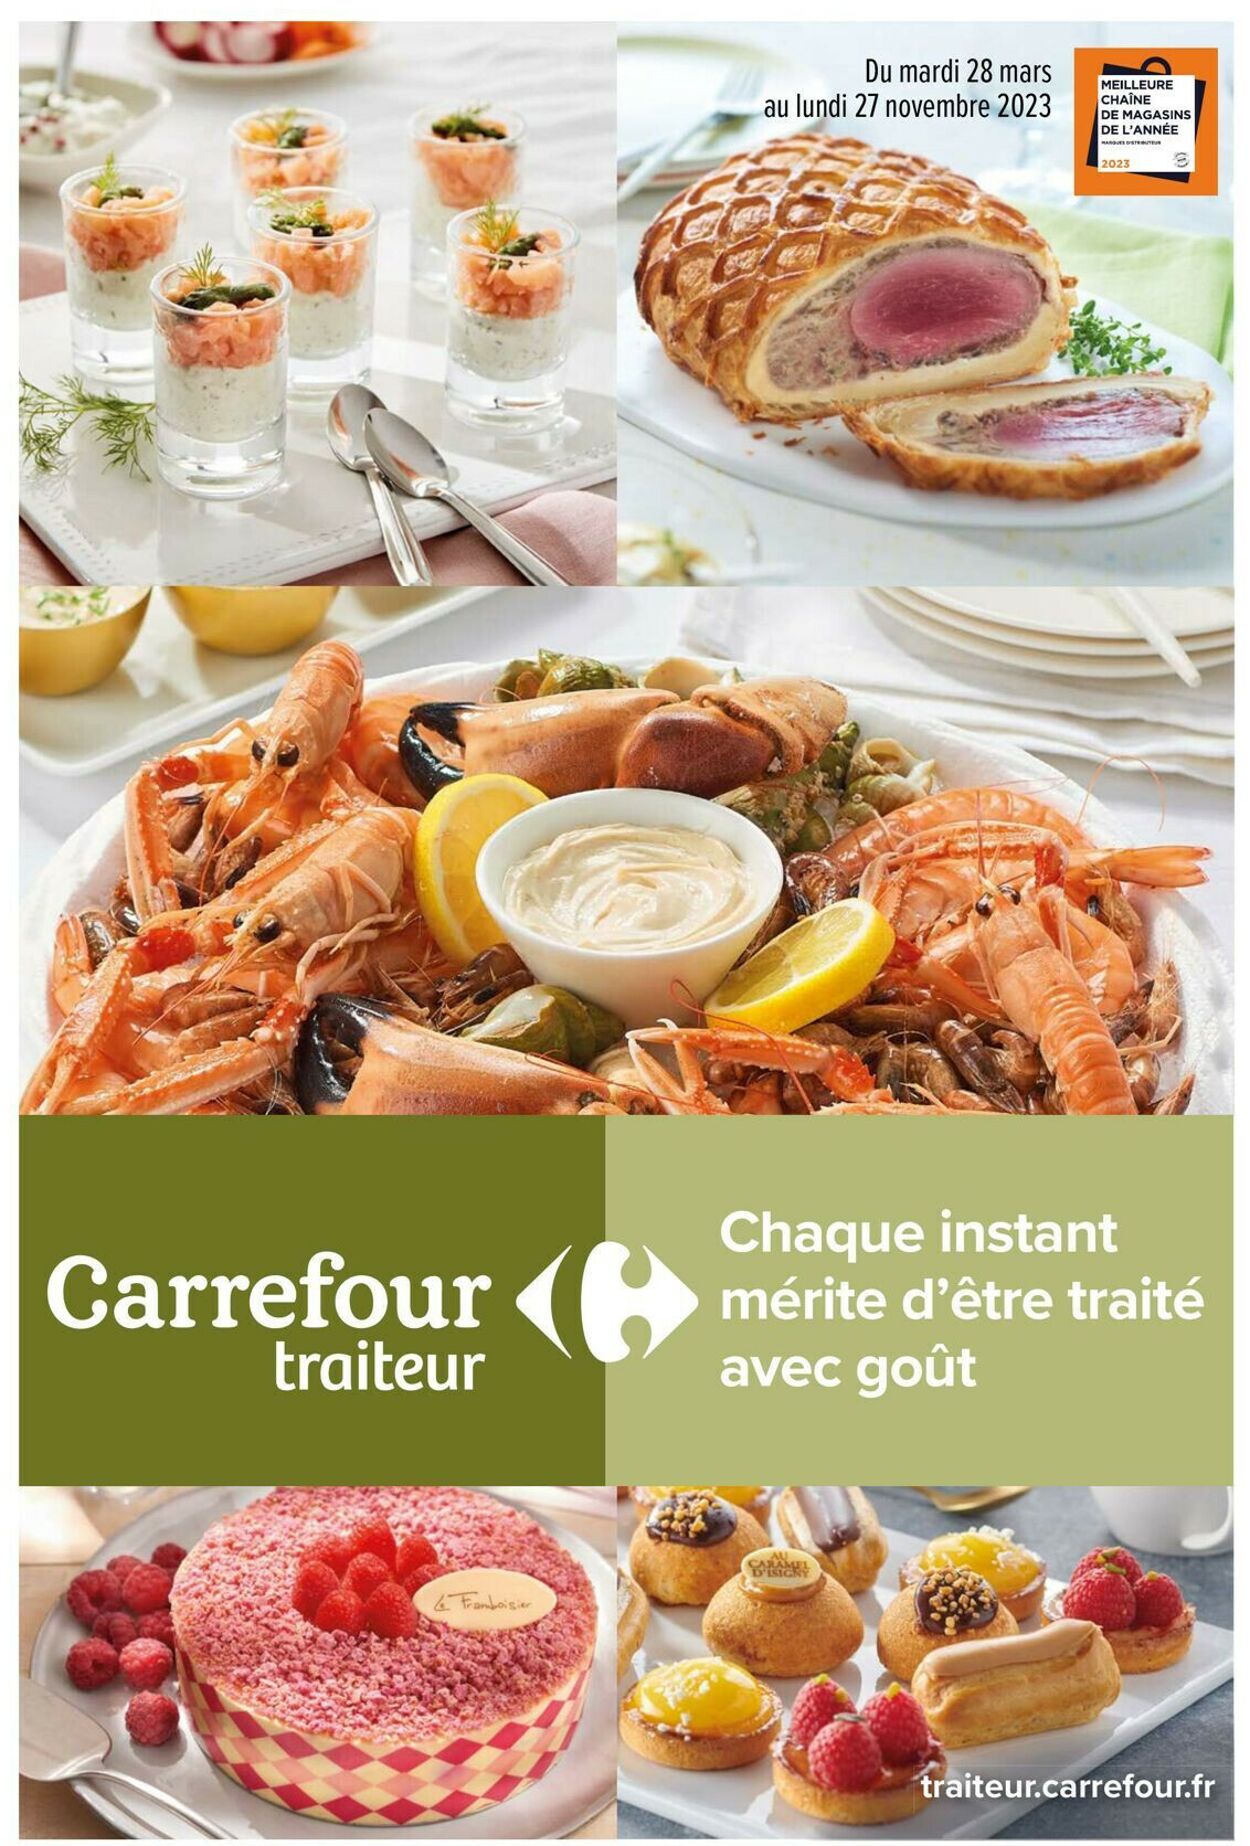 Carrefour Market Catalogue - 28.03-27.11.2023